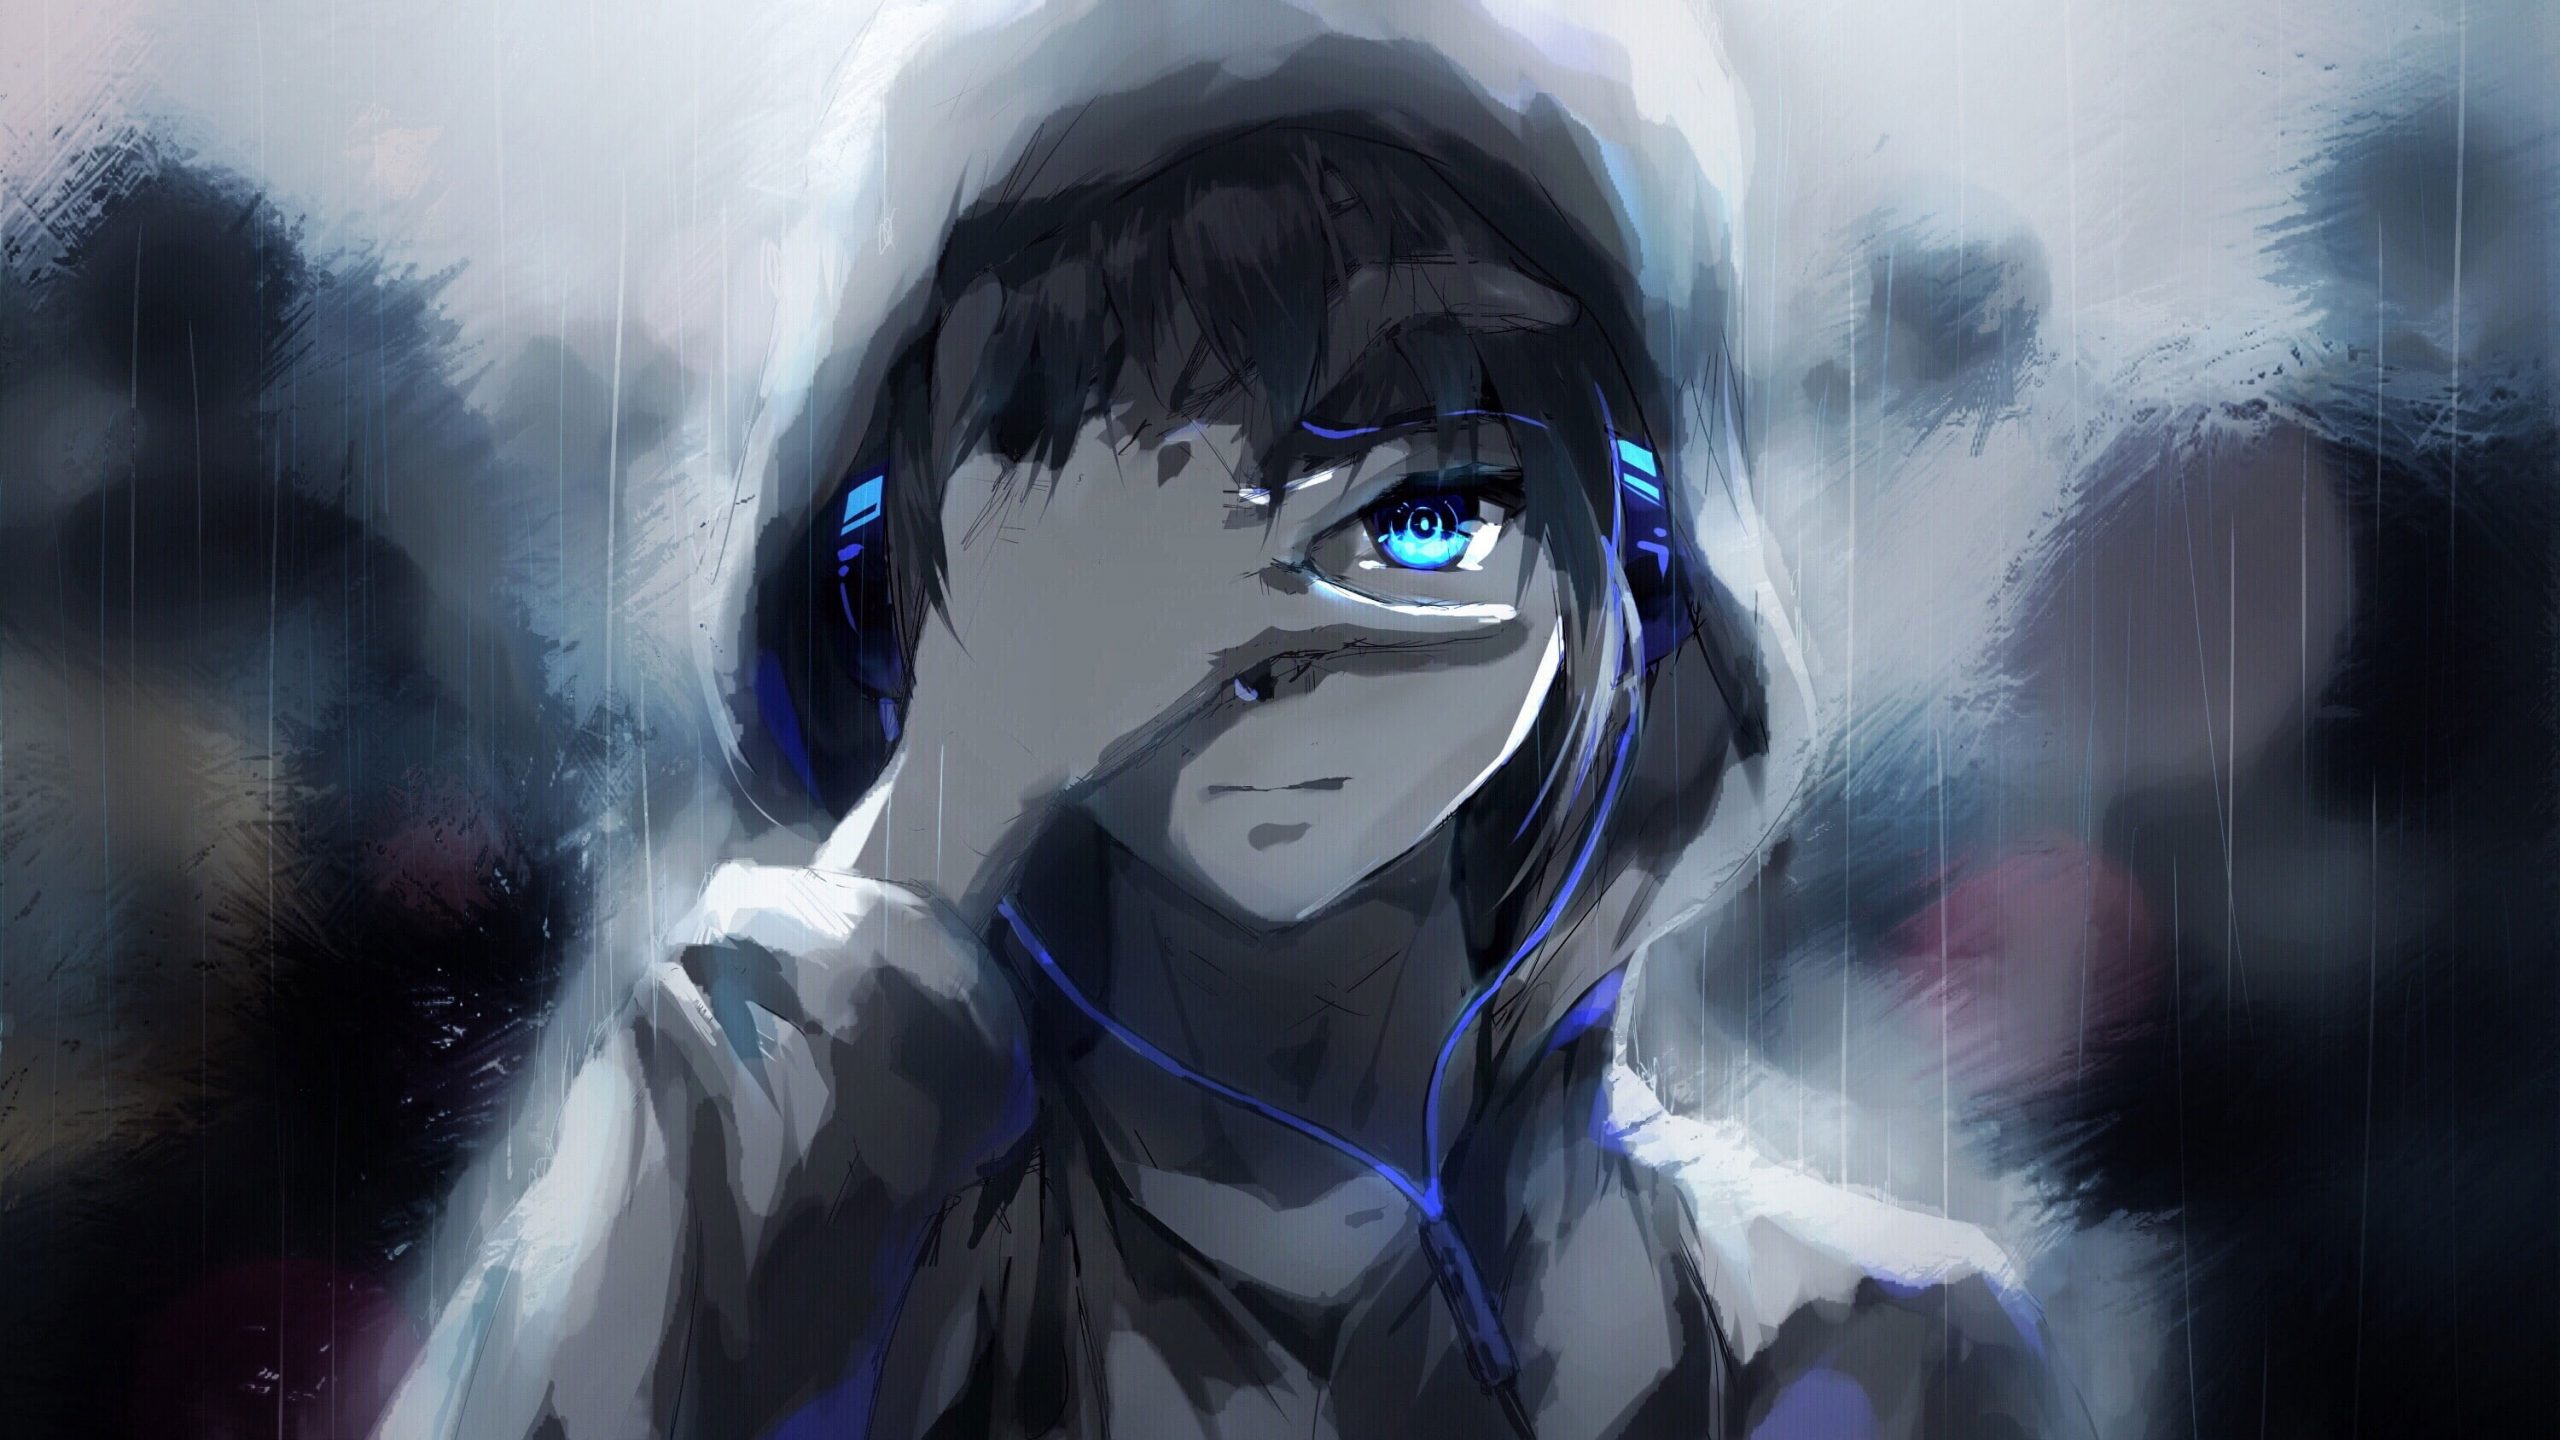 Anime boy wallpaper, hoodie, blue eyes, headphones, painting